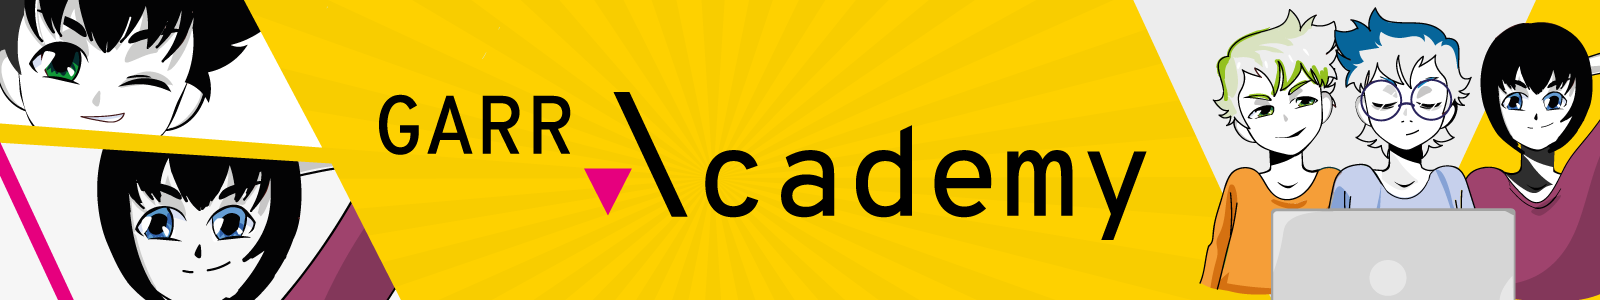 Garr Academy - una splendida esperienza